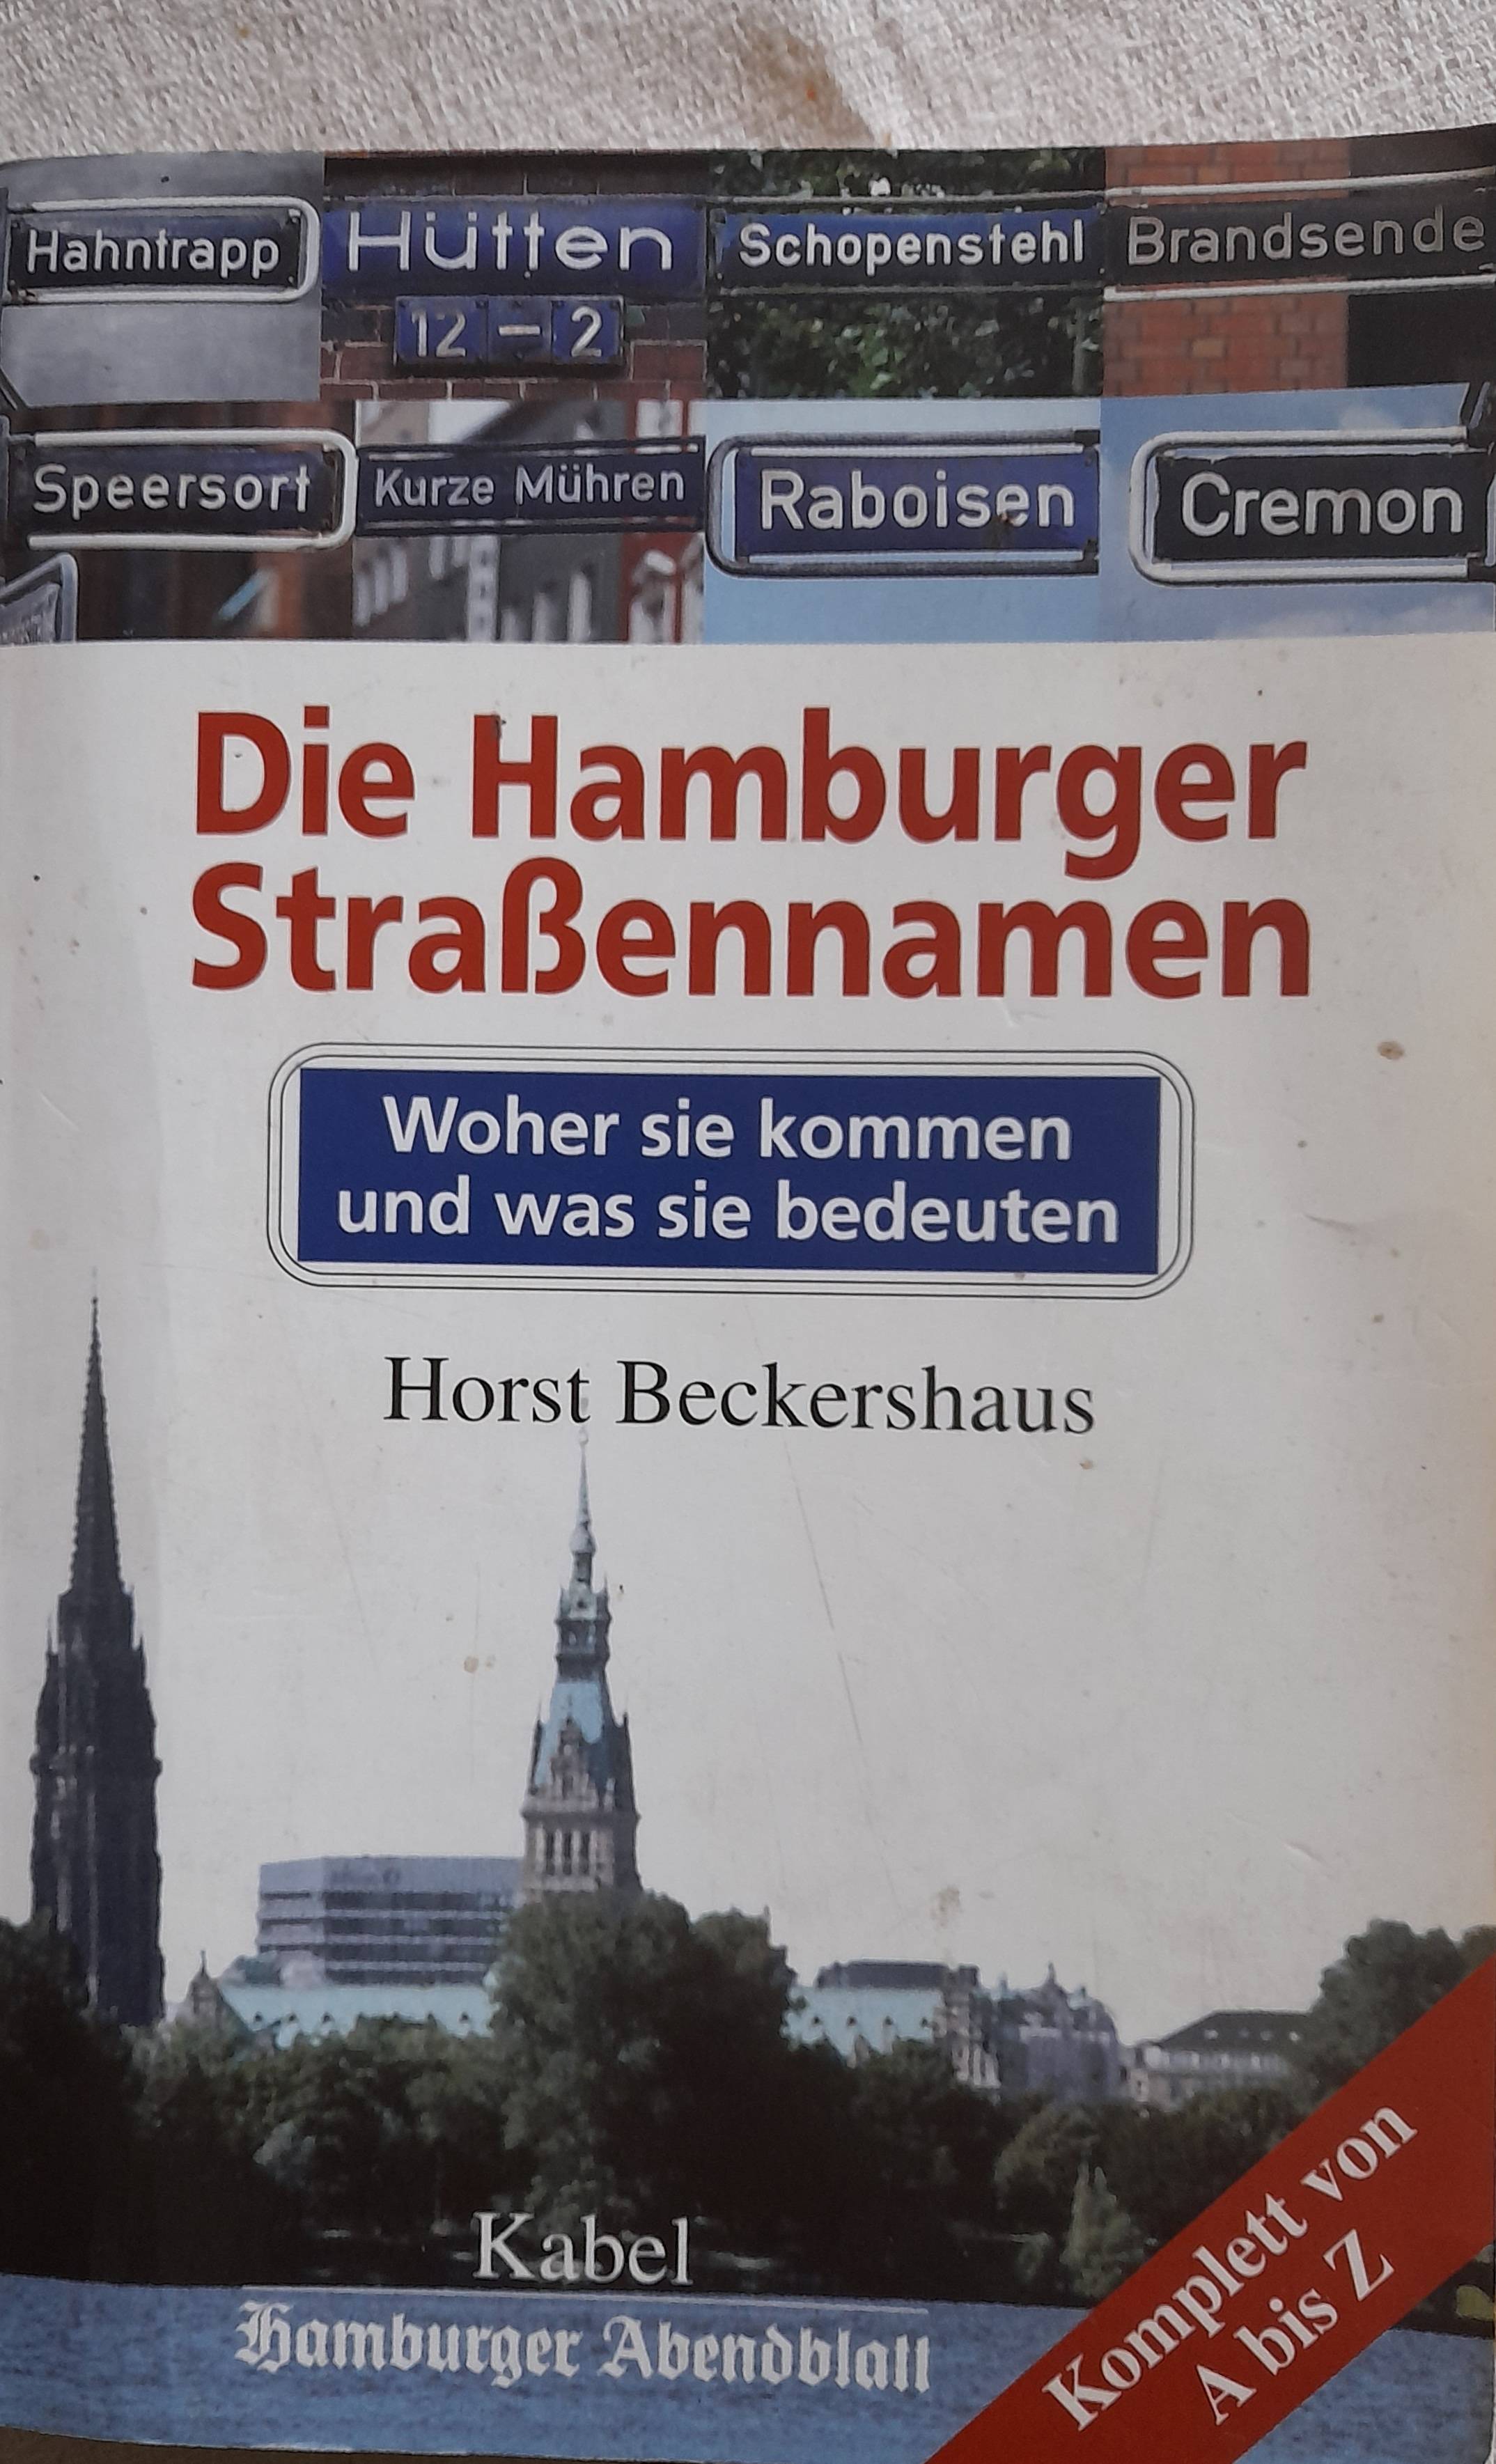 Das Buch mit den Hamburger Strassennamen